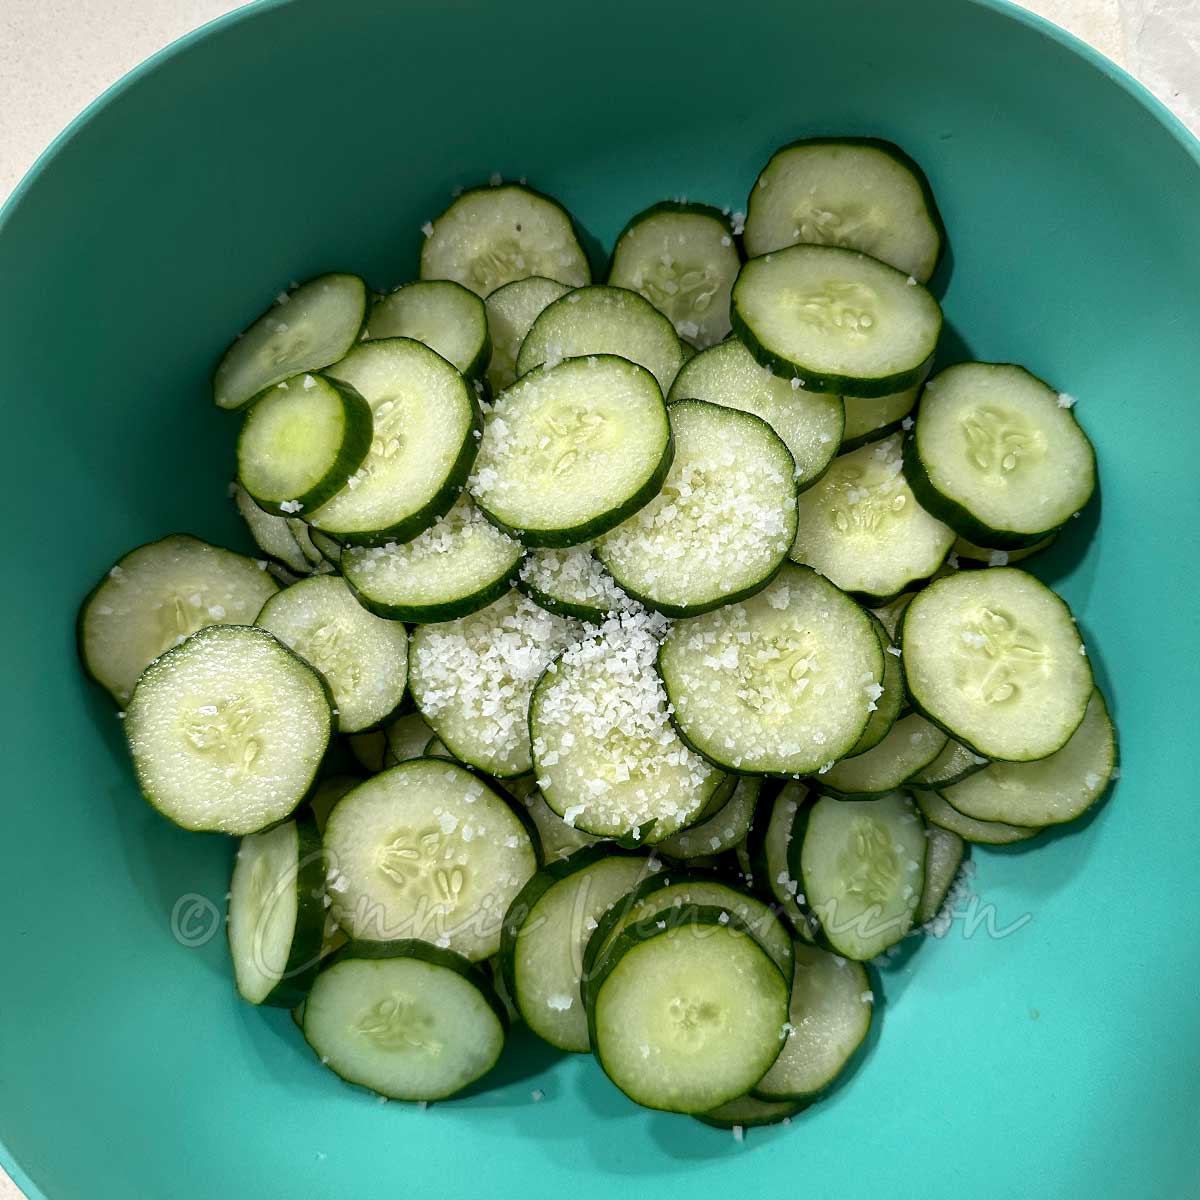 Cucumber slices sprinkled with rock salt